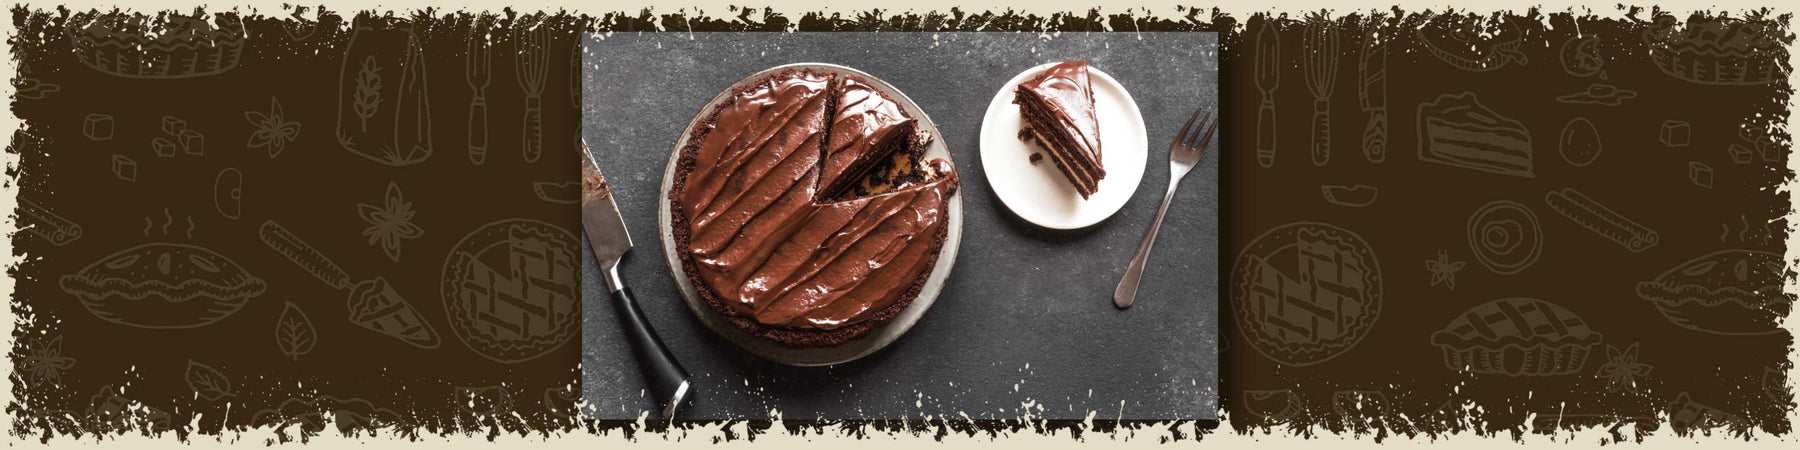 gluten free chocolate cake recipe baked to taste devon